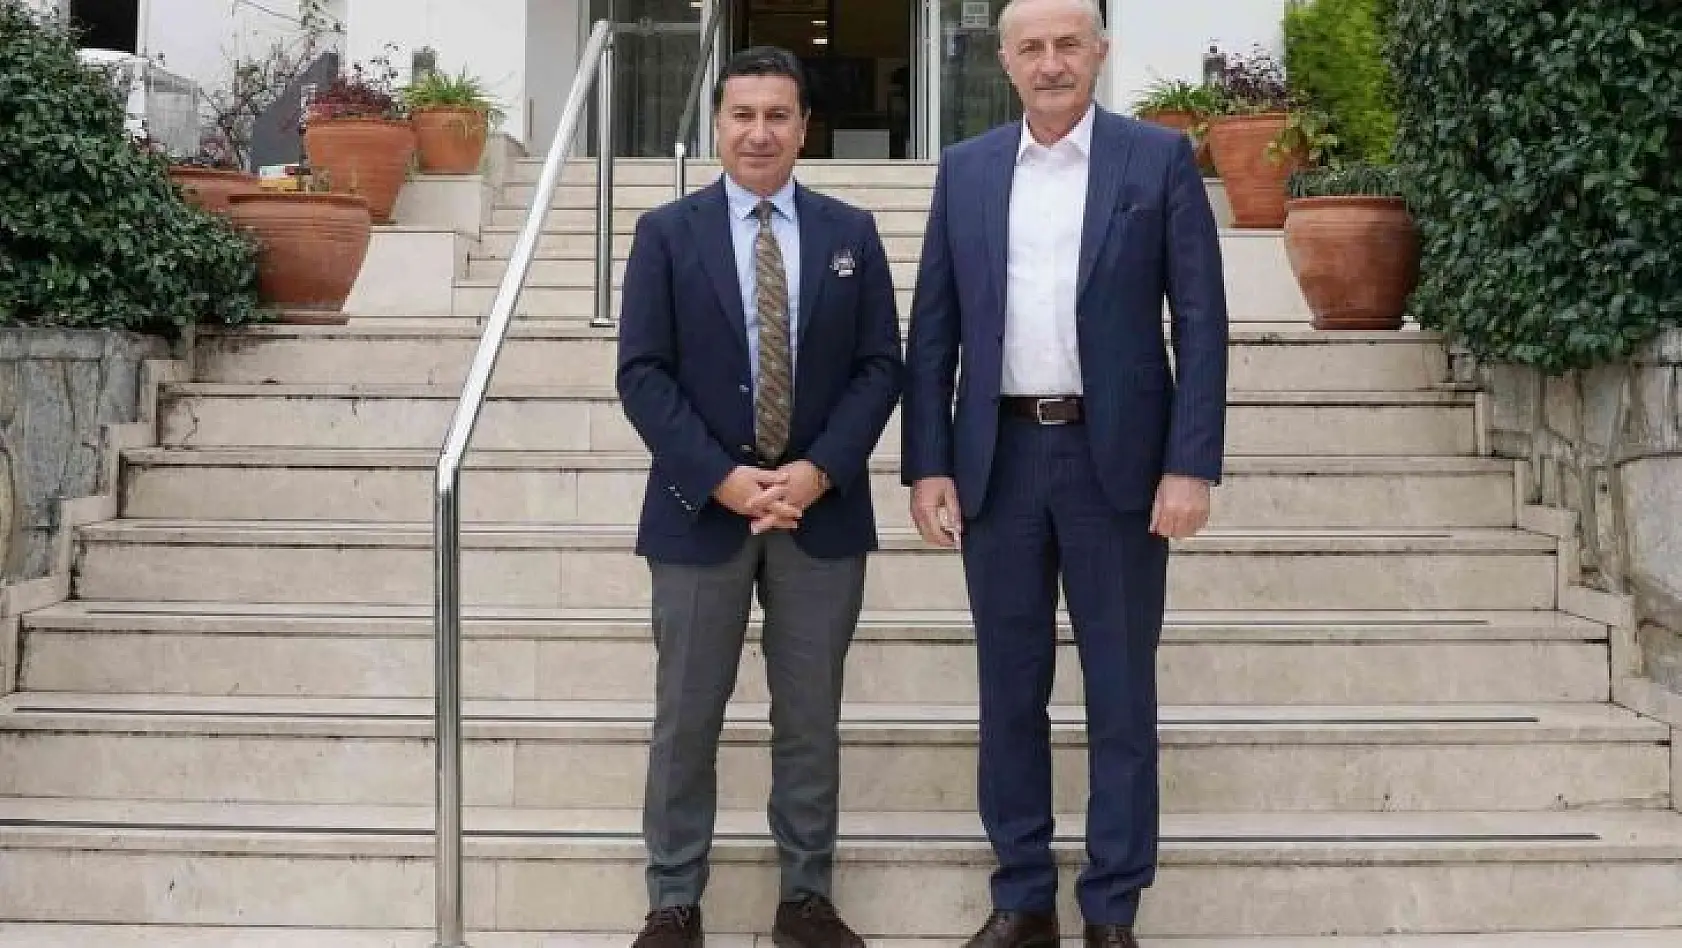 Başkan Atabay, Bodrum Belediye Başkanı Aras ile görüştü